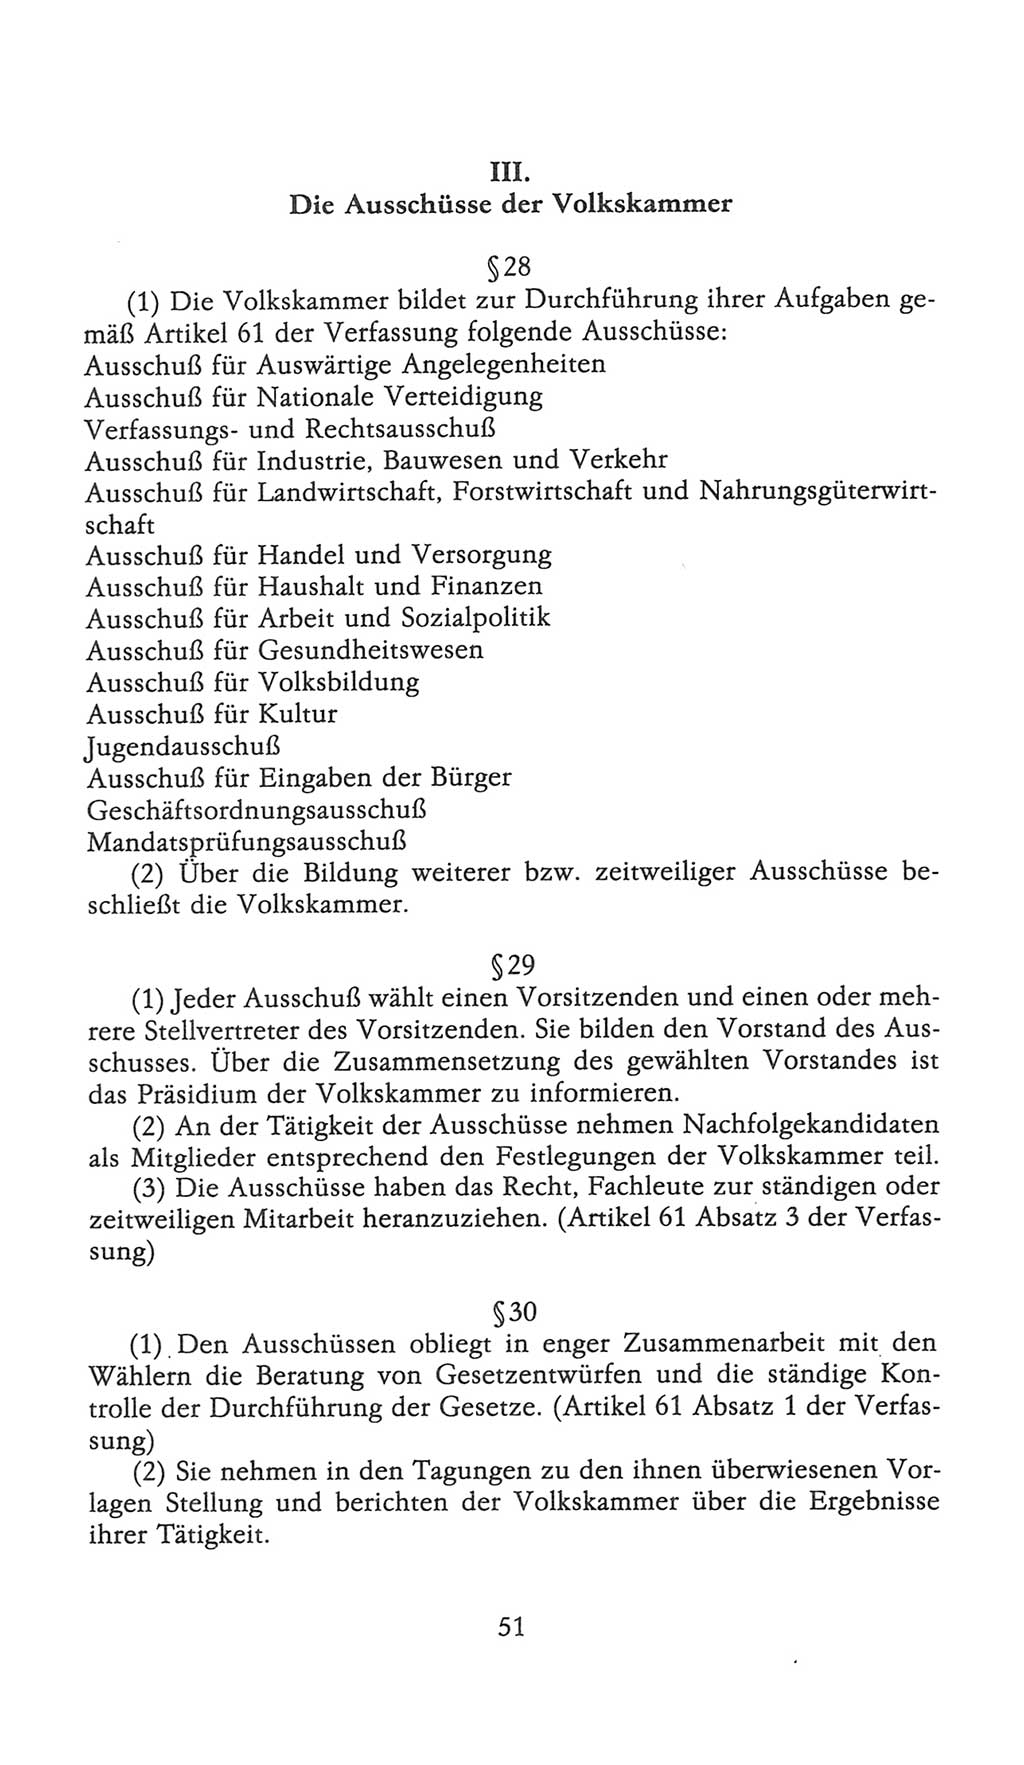 Volkskammer (VK) der Deutschen Demokratischen Republik (DDR), 9. Wahlperiode 1986-1990, Seite 51 (VK. DDR 9. WP. 1986-1990, S. 51)